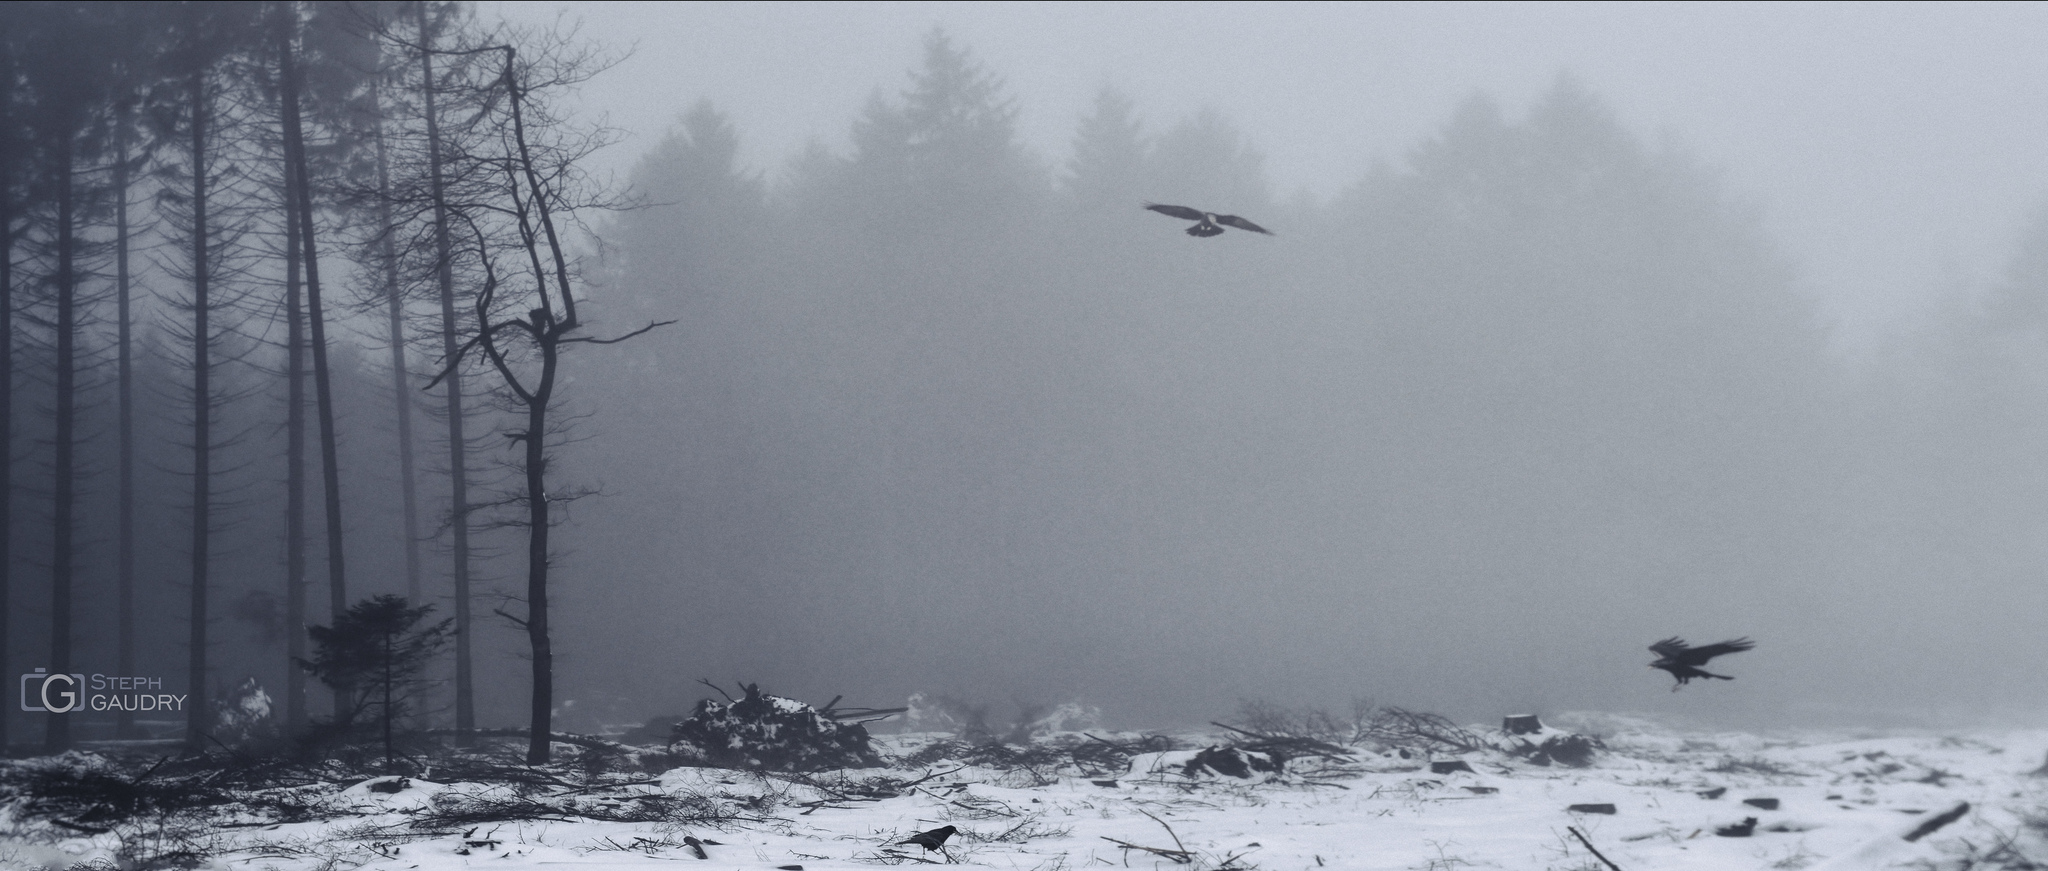 Crows in the mist - Xhoris [Klicken Sie hier, um die Diashow zu starten]